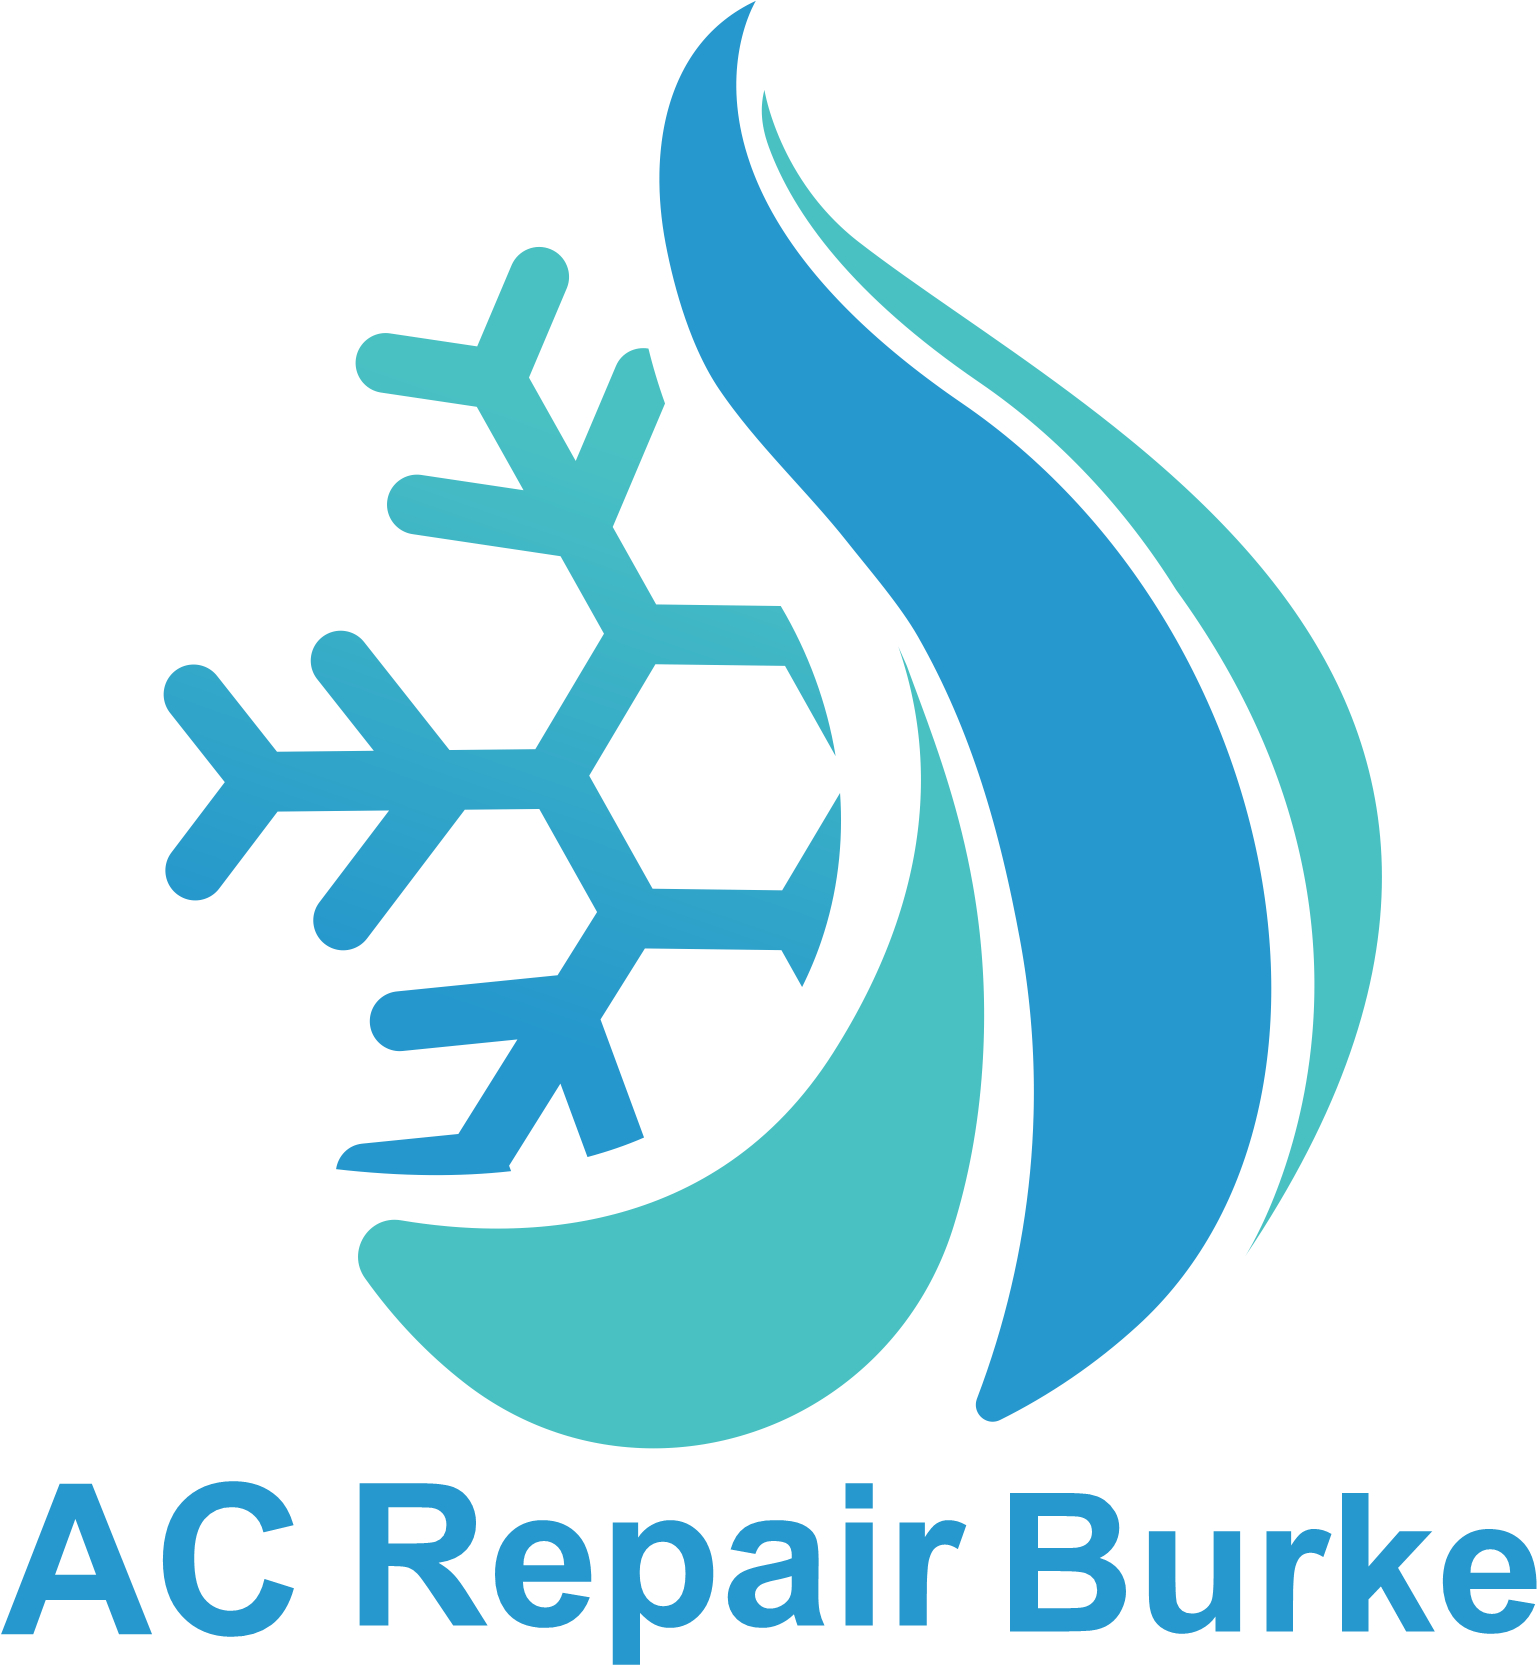 Business logo of AC Repair Burke